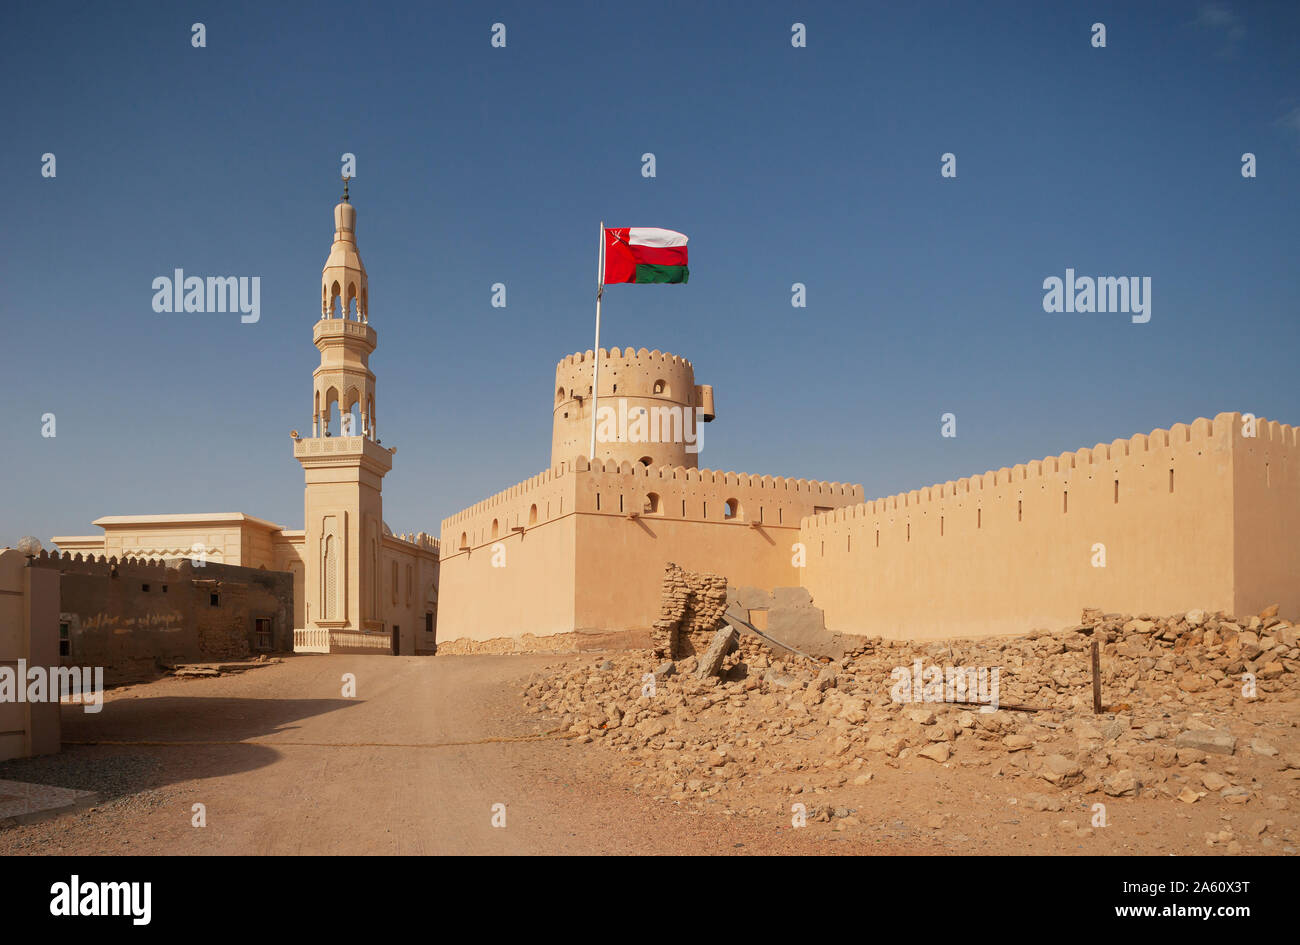 Sultanate Of Oman, Ras al Hadd, Ras al Hadd Castle with Omani flag and minaret Stock Photo